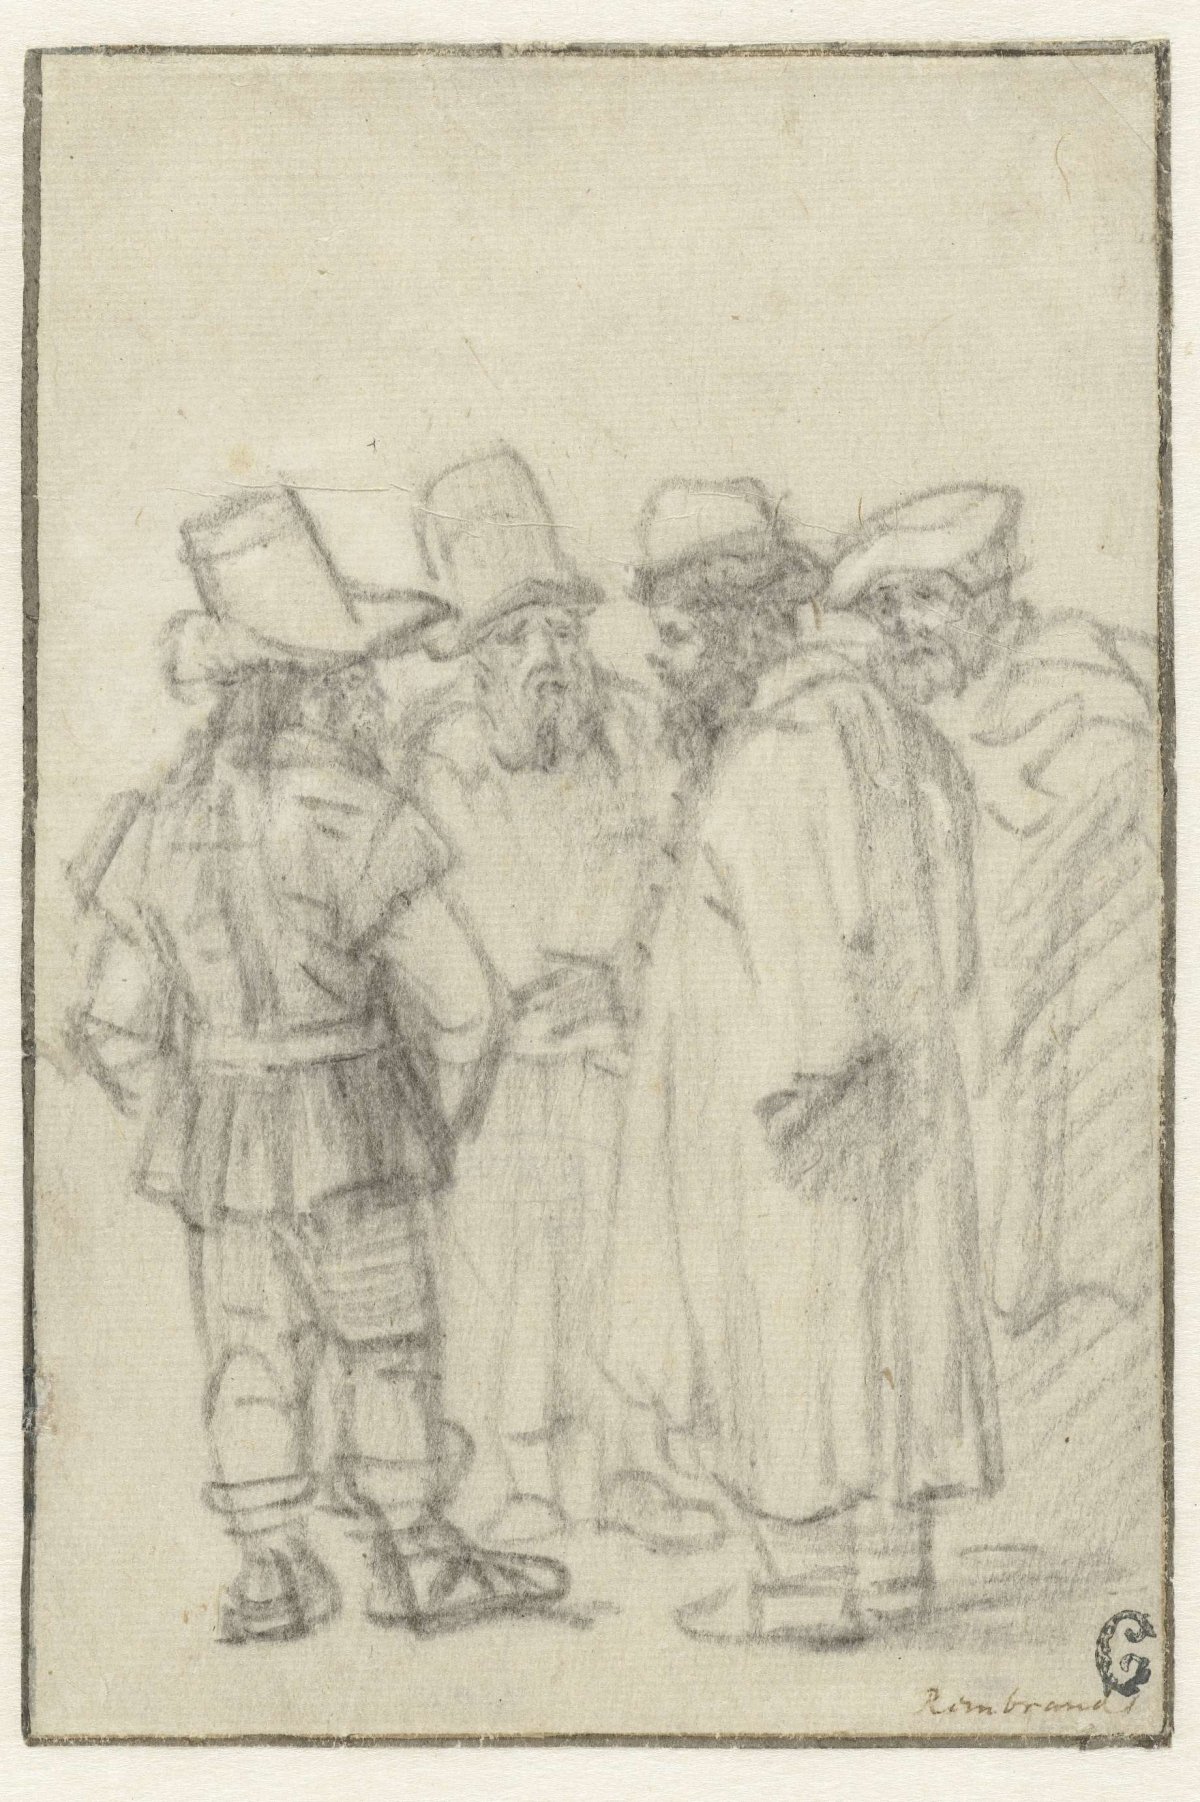 Four Men Standing, Wearing Hats, Rembrandt van Rijn, c. 1650